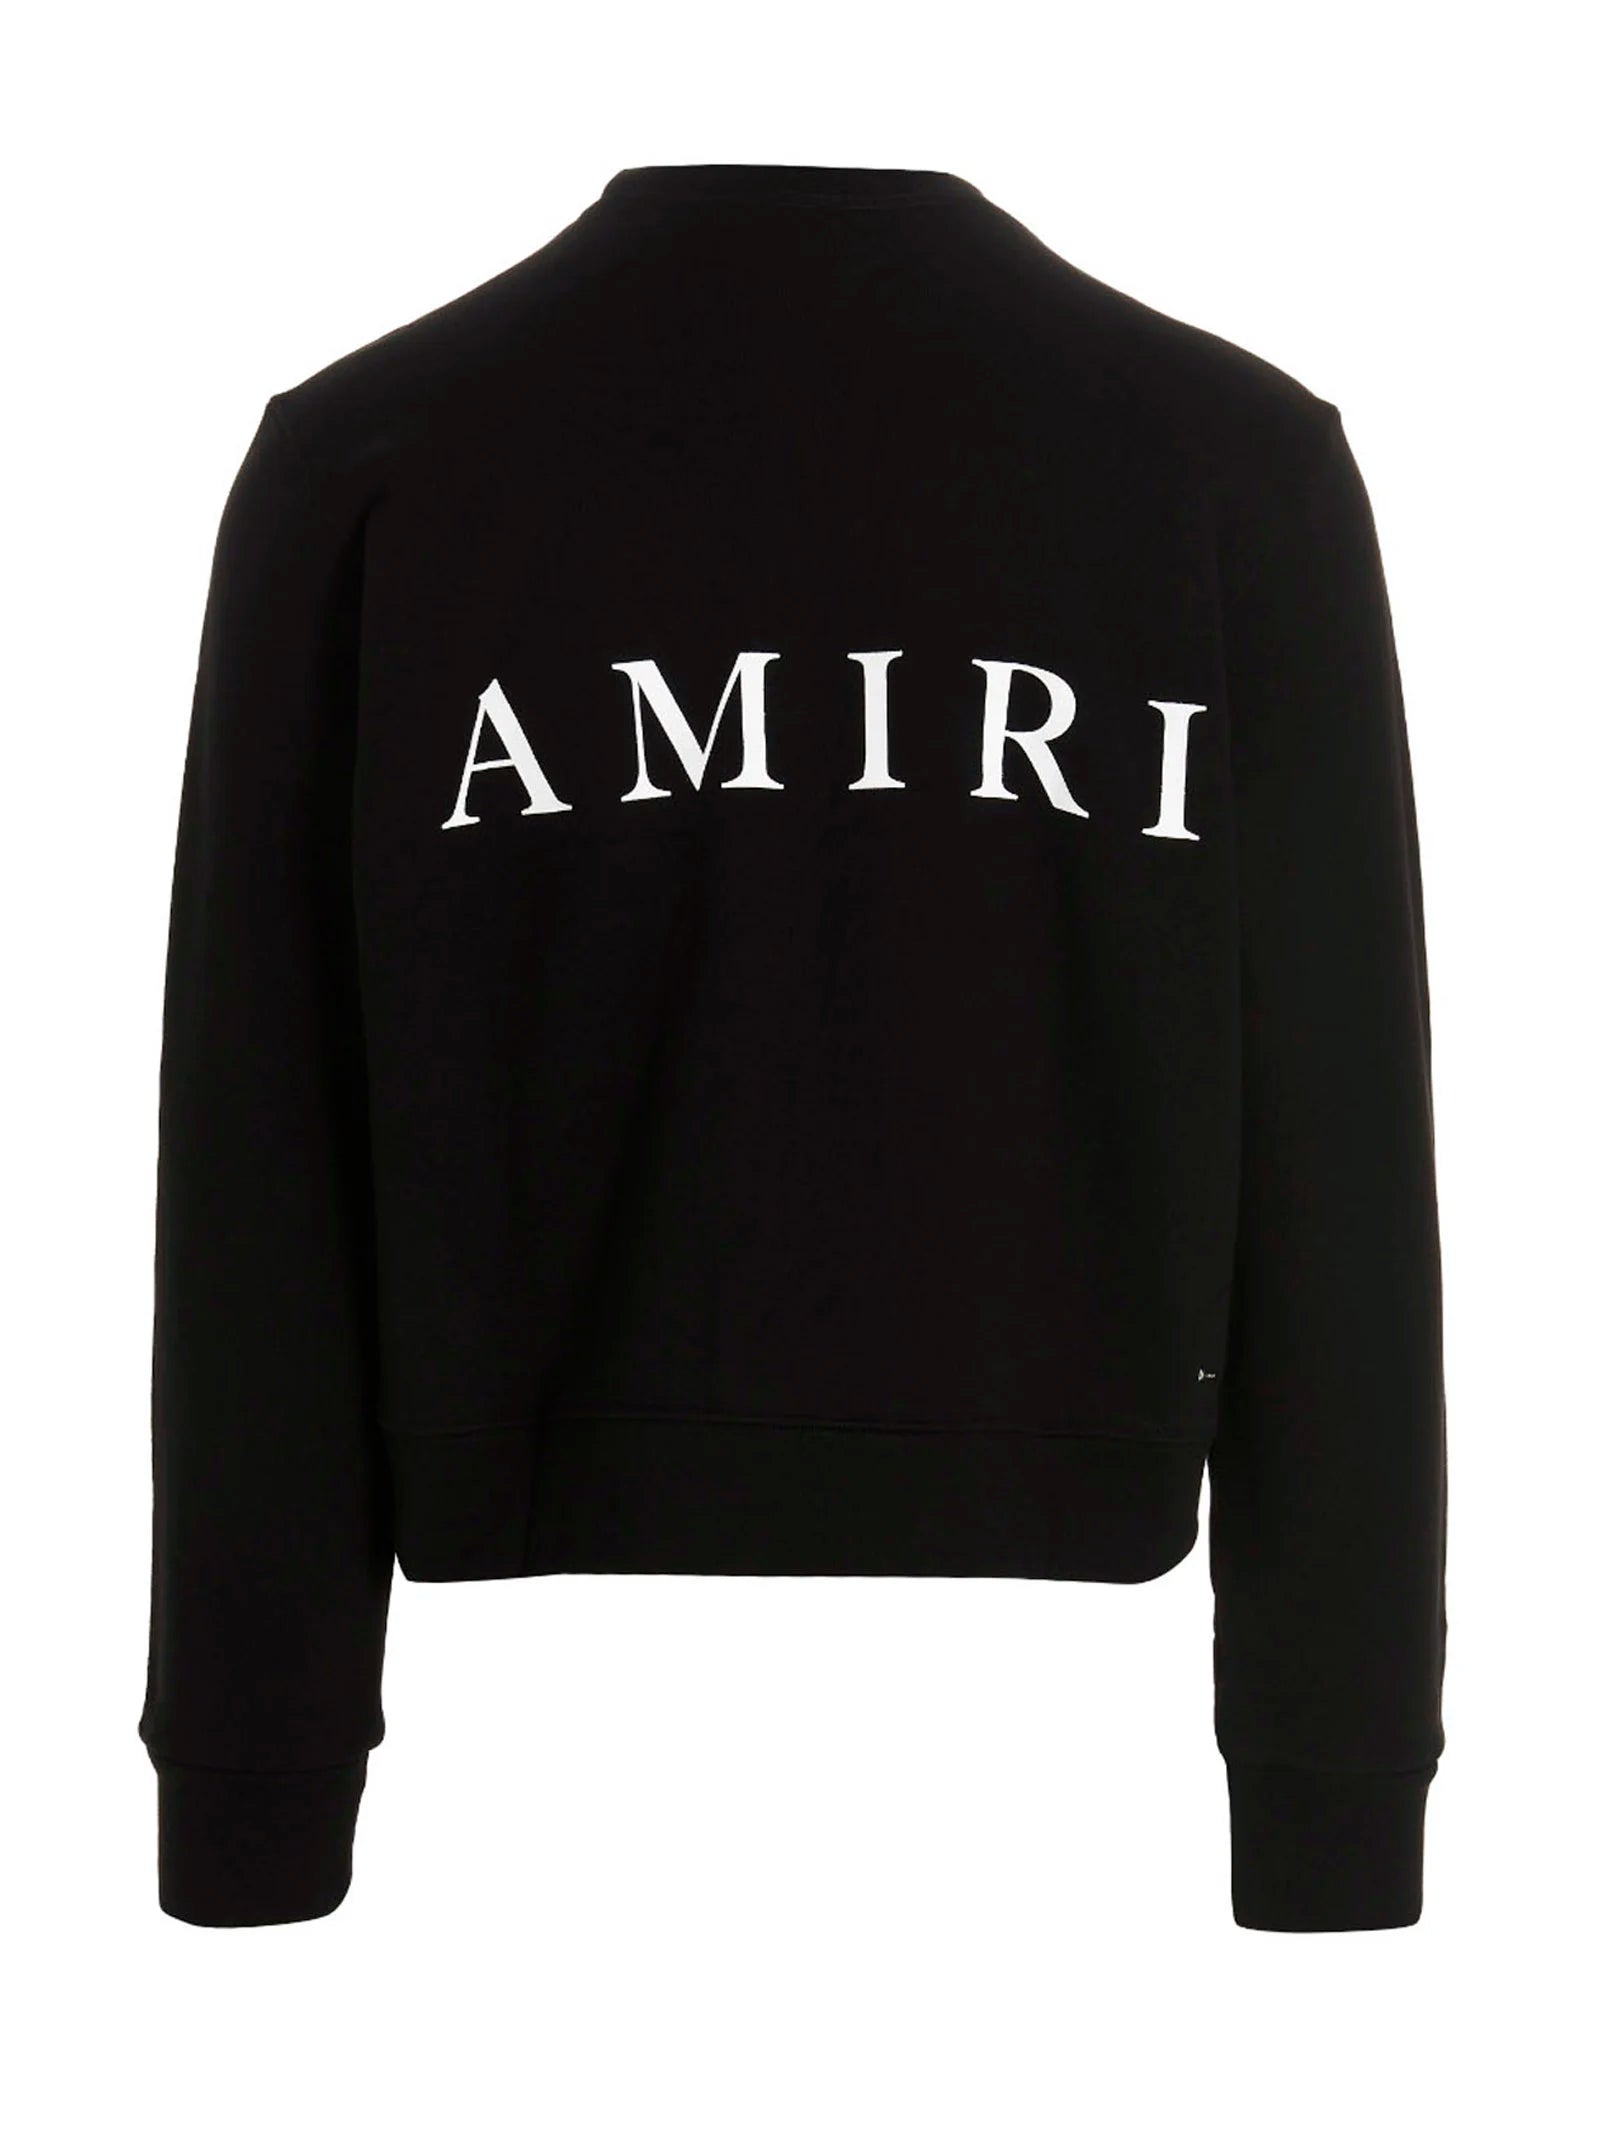 AMIRI M.A Core Logo Crewneck Black